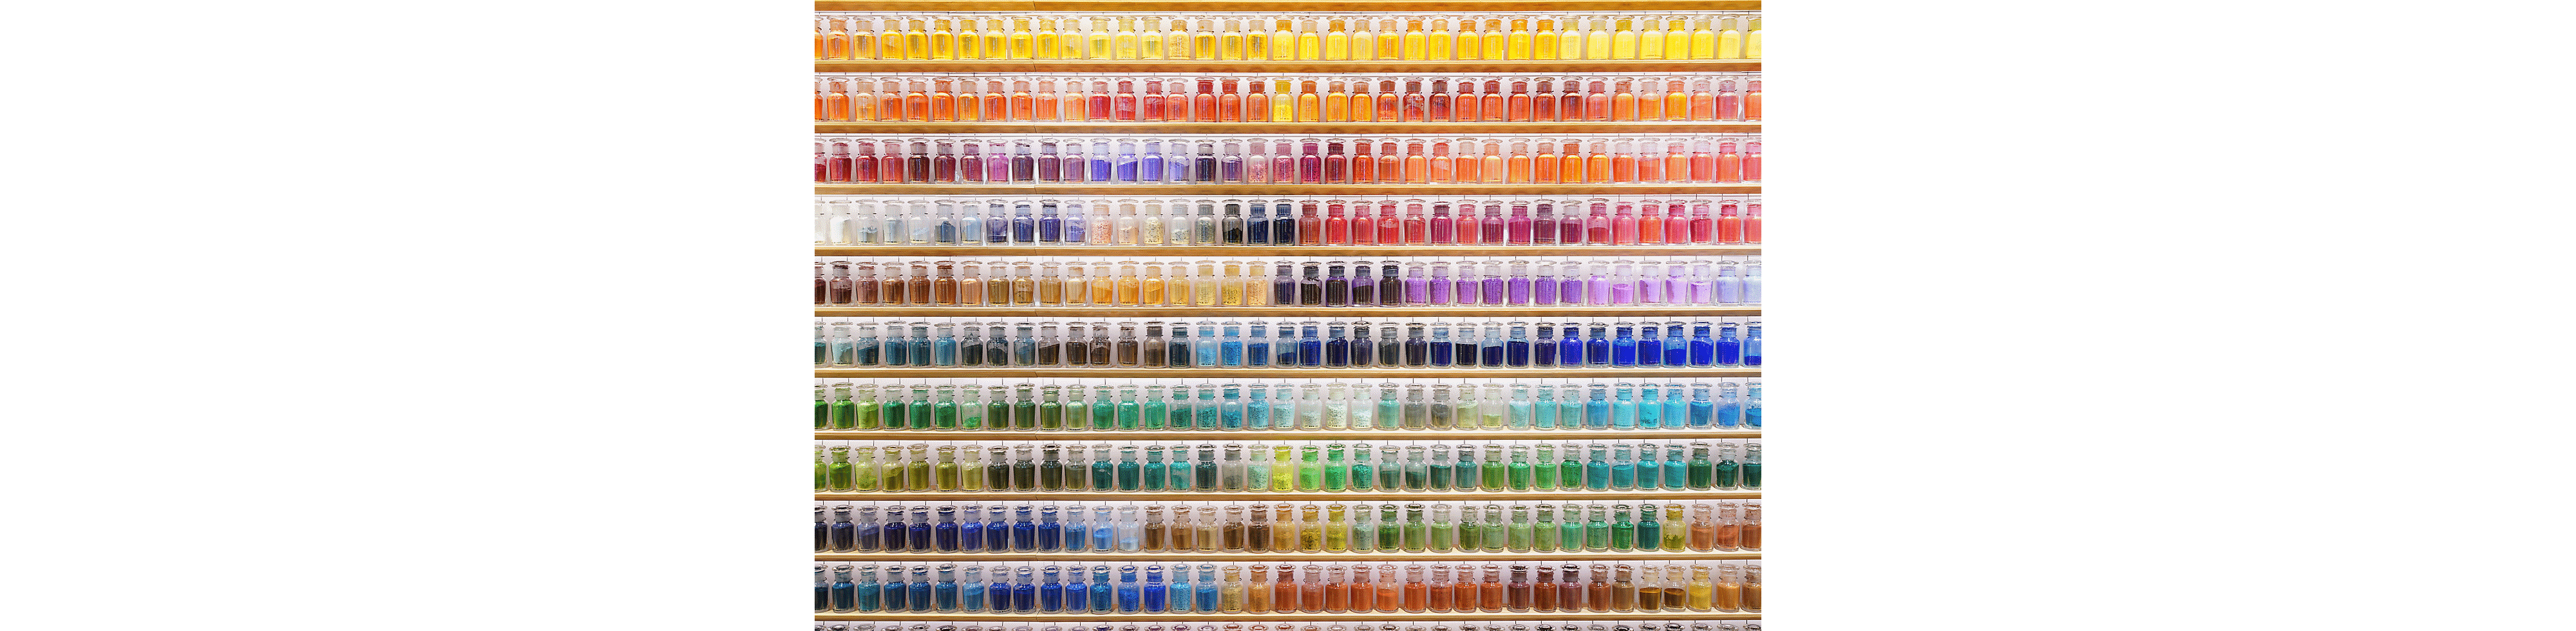 Exempelbild på en vägg full med färggranna flaskor